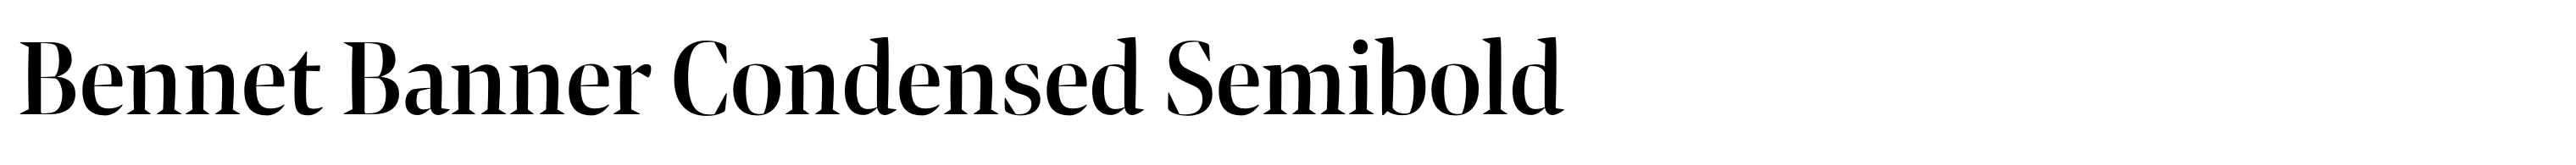 Bennet Banner Condensed Semibold